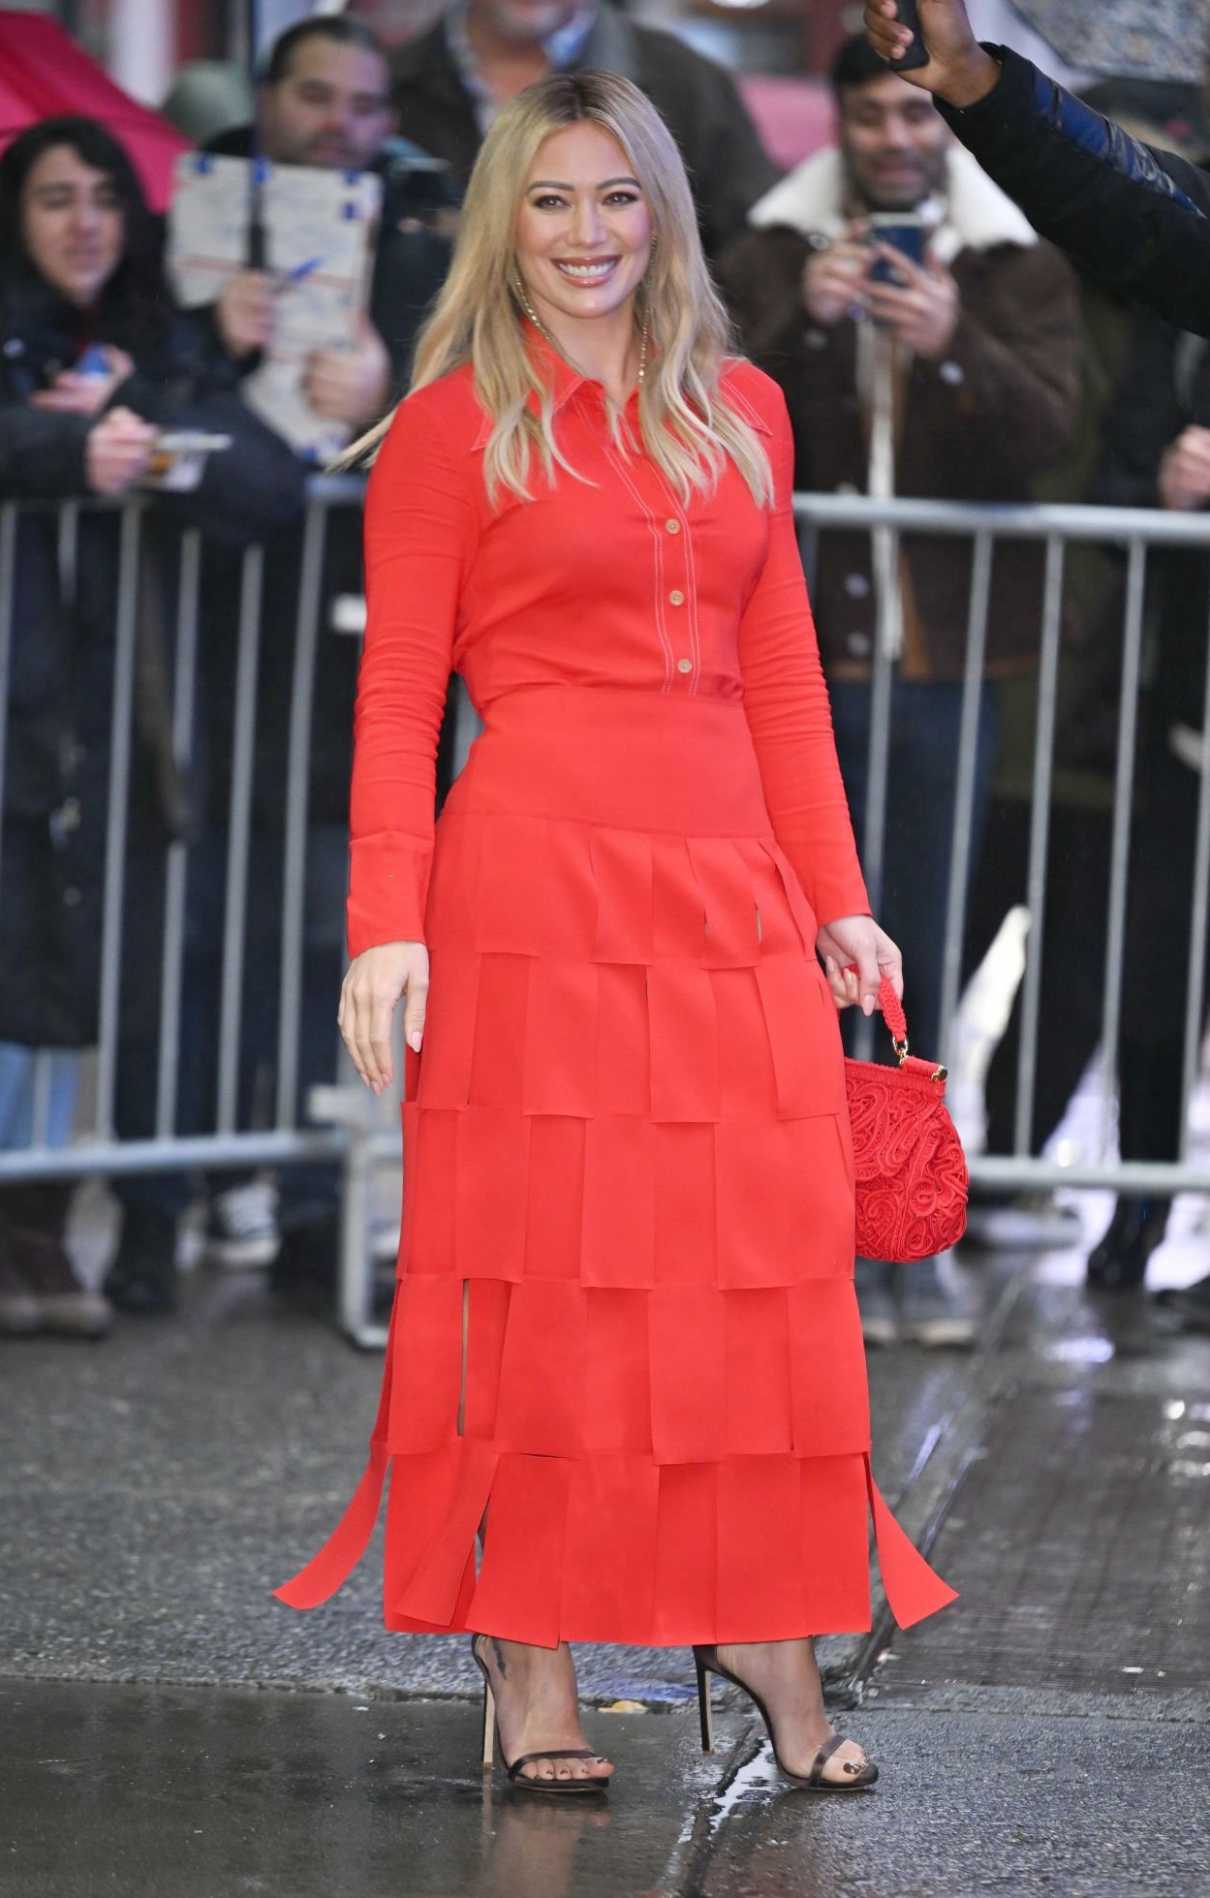 Hilary Duff in a Red Dress